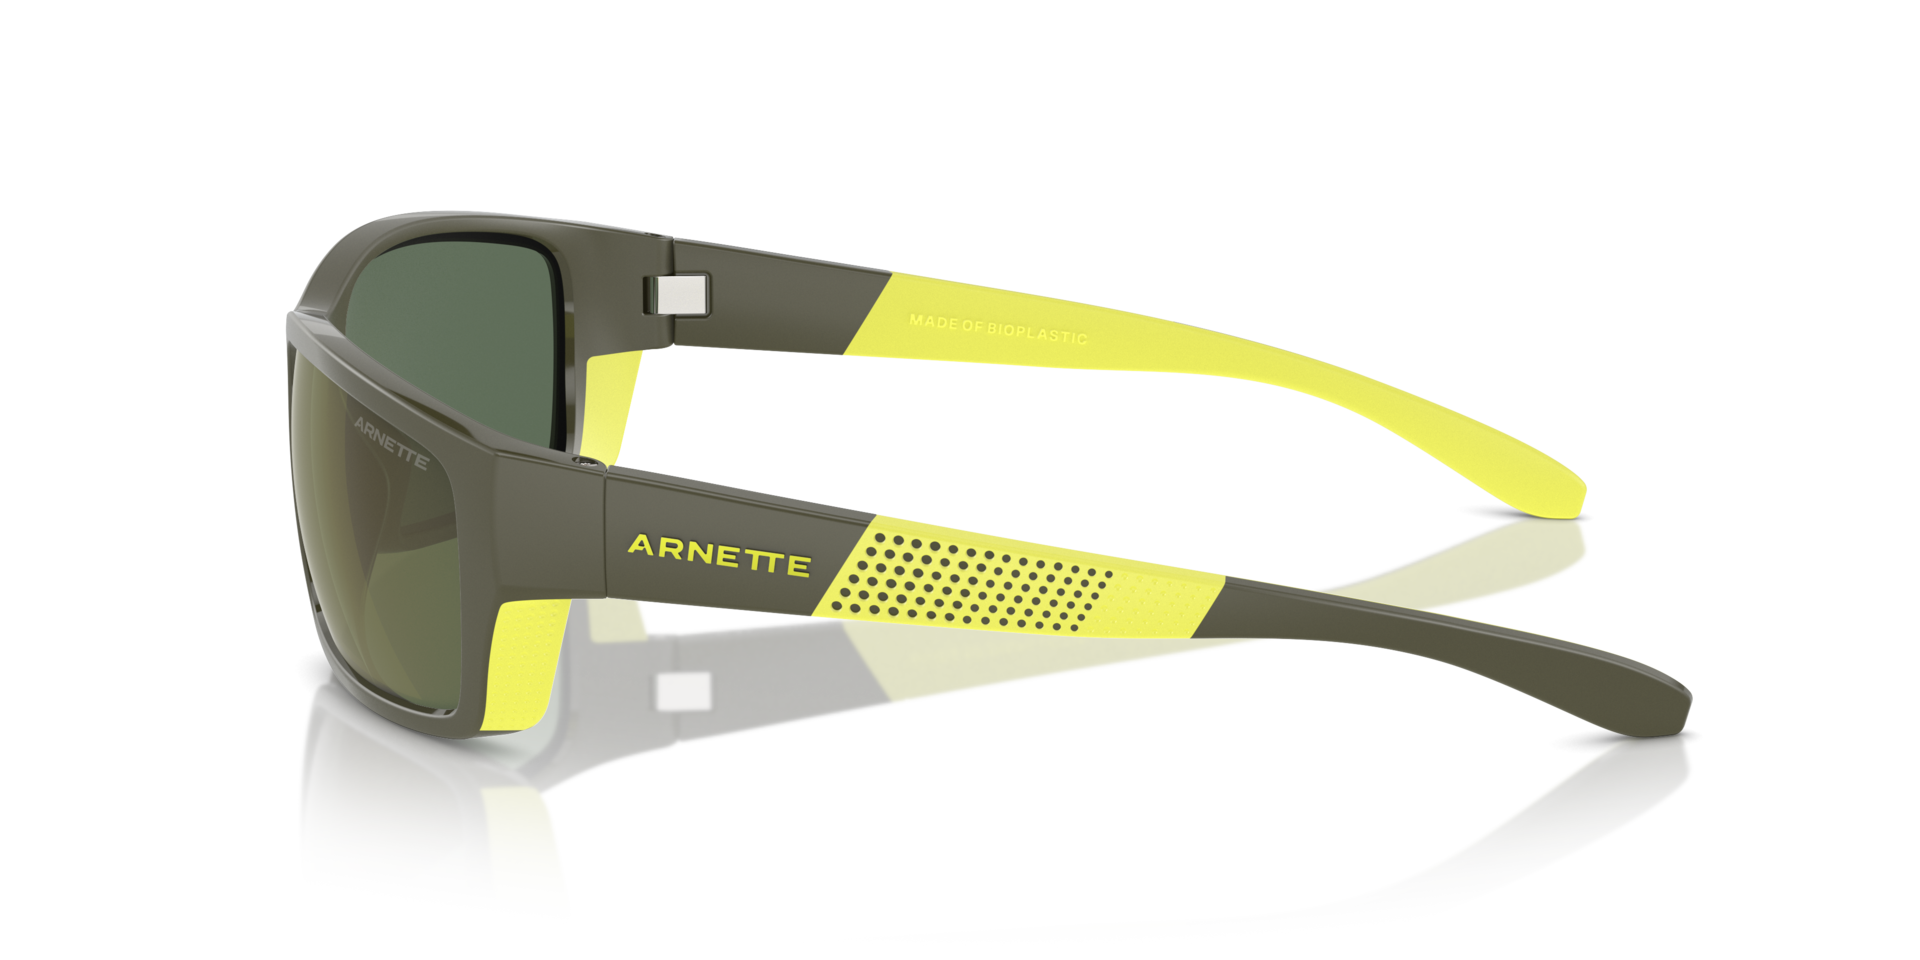 Das Bild zeigt die Sonnenbrille AN4336 28546R von der Marke Arnette in grau/gelb.